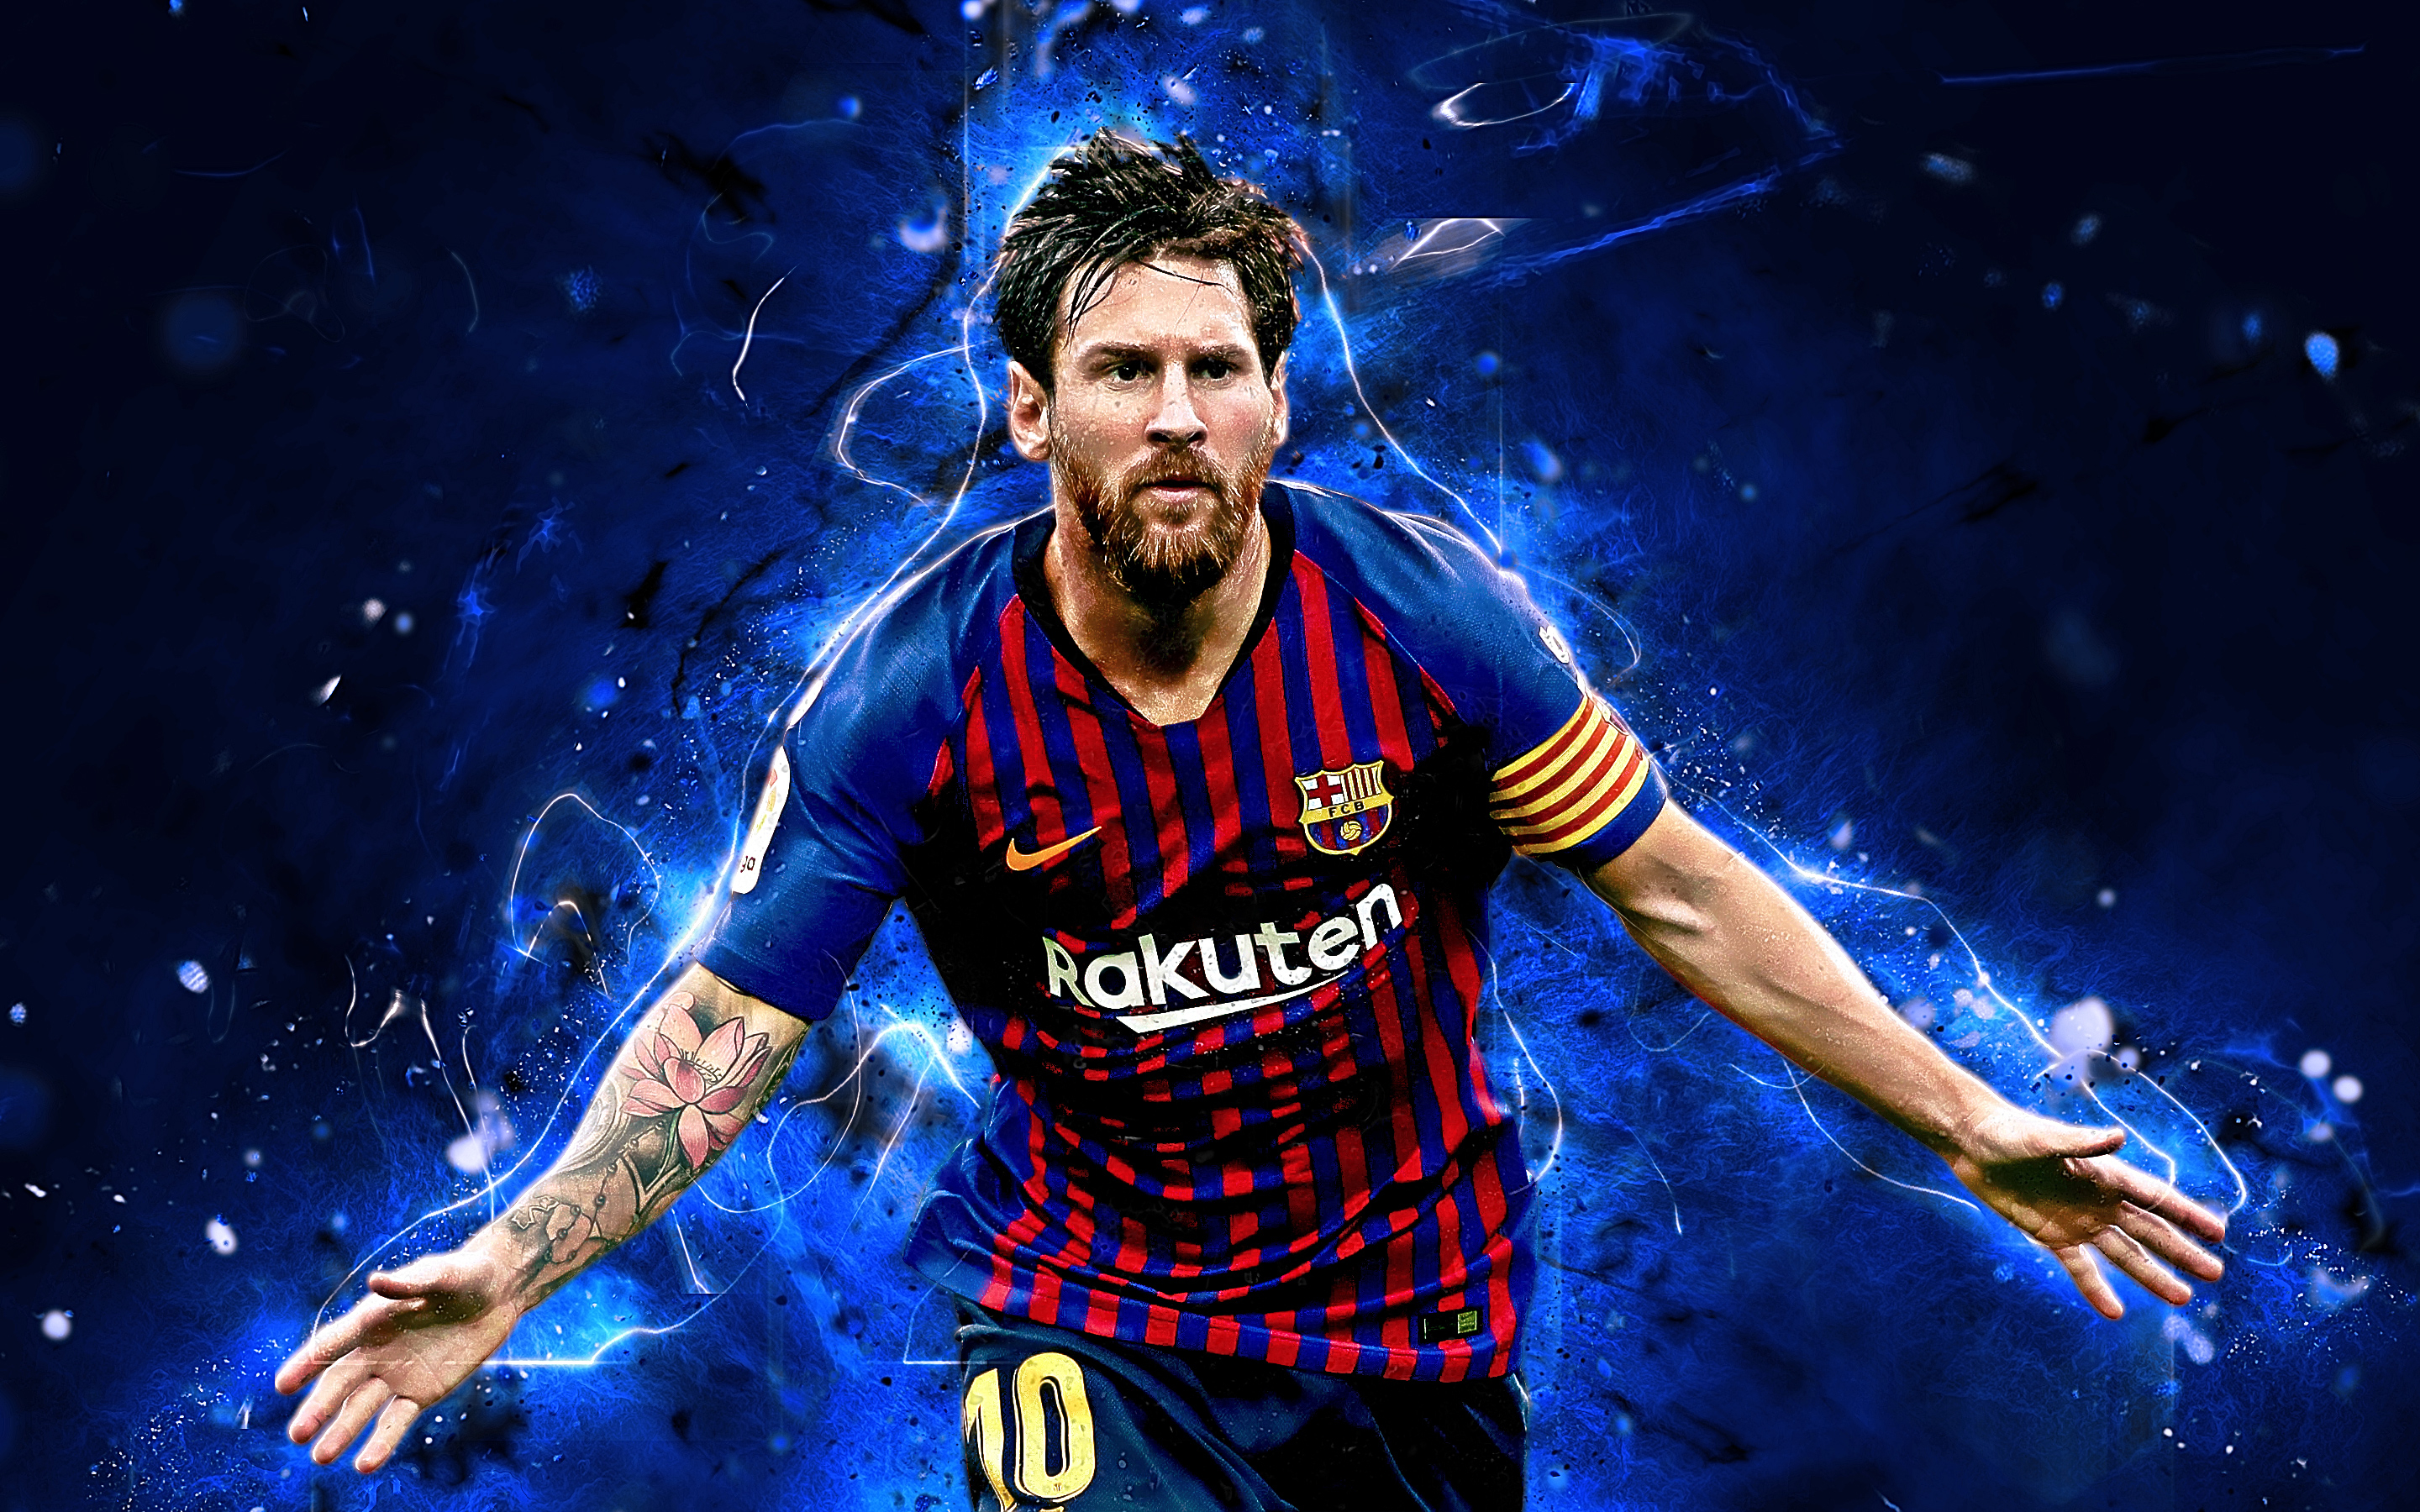 Messi Barca Wallpaper là một bộ sưu tập hình nền ấn tượng và đáng chú ý, mang đến cho người xem những hình ảnh sống động về cầu thủ này cũng như đội bóng huyền thoại Barca. Tuyệt đối đáng để xem và sưu tập cho những ai yêu thích sự đẹp mắt và chất lượng của những hình nền này.